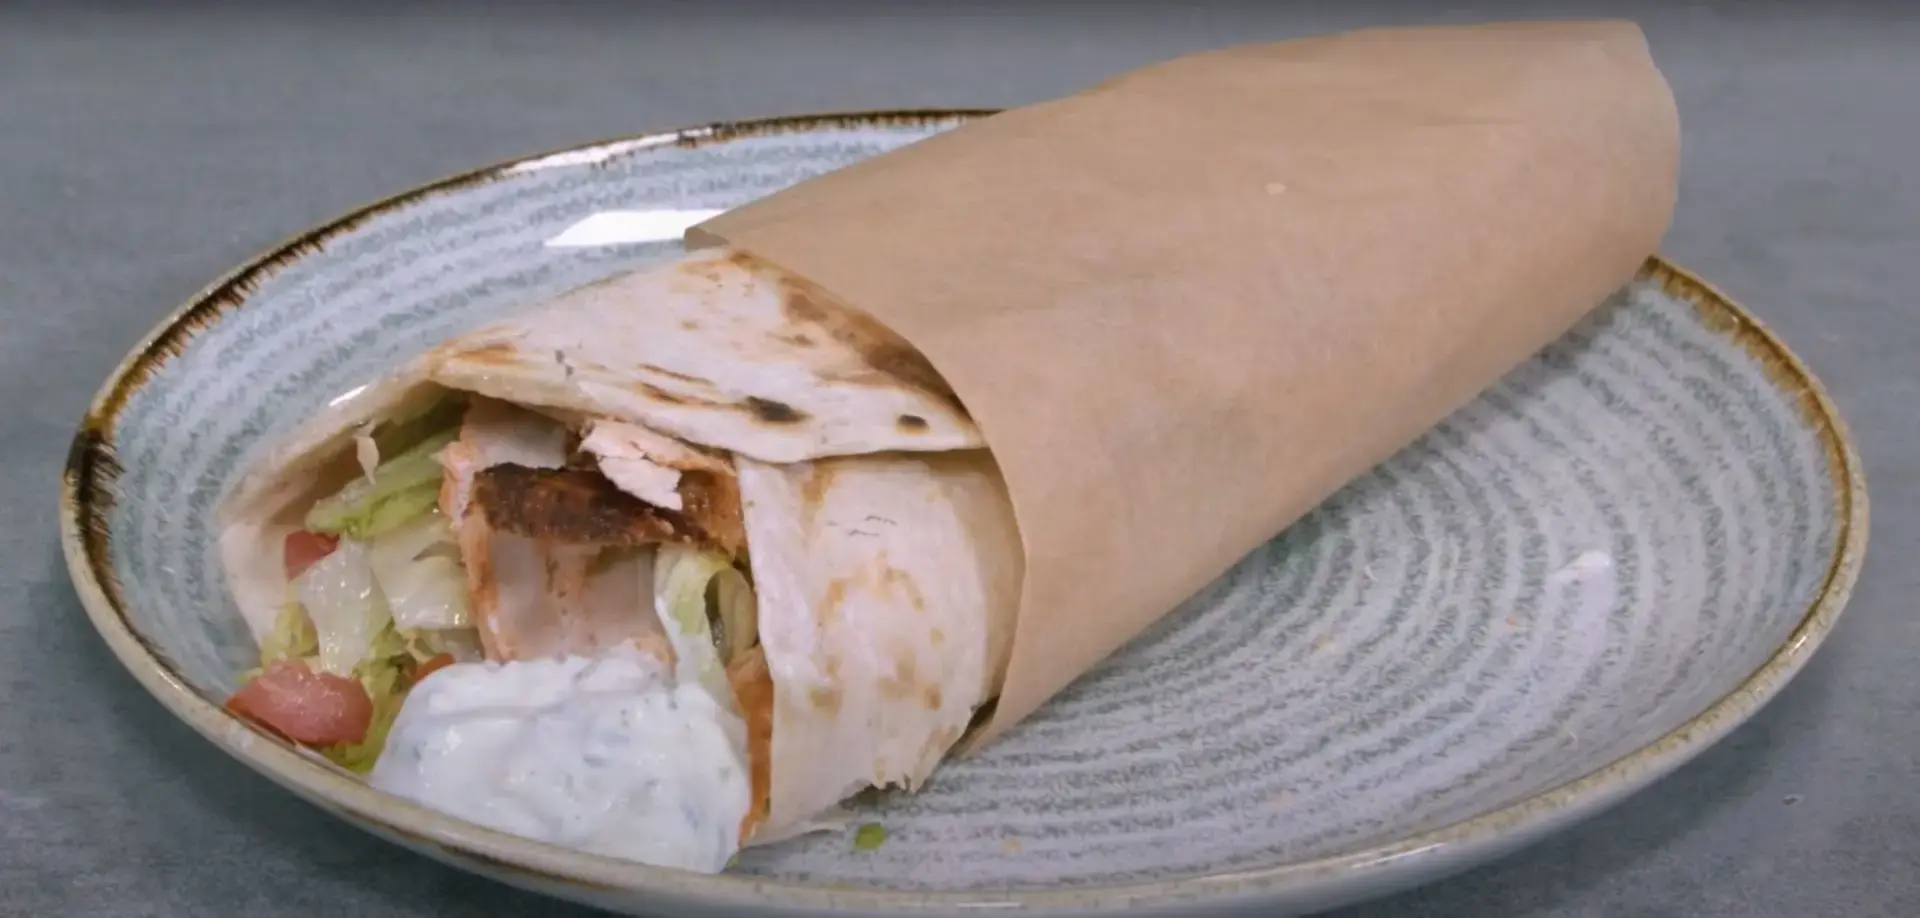 Kebab di pollo con lattuga iceberg e salsa allo yogurt: una ricetta fai da te!  